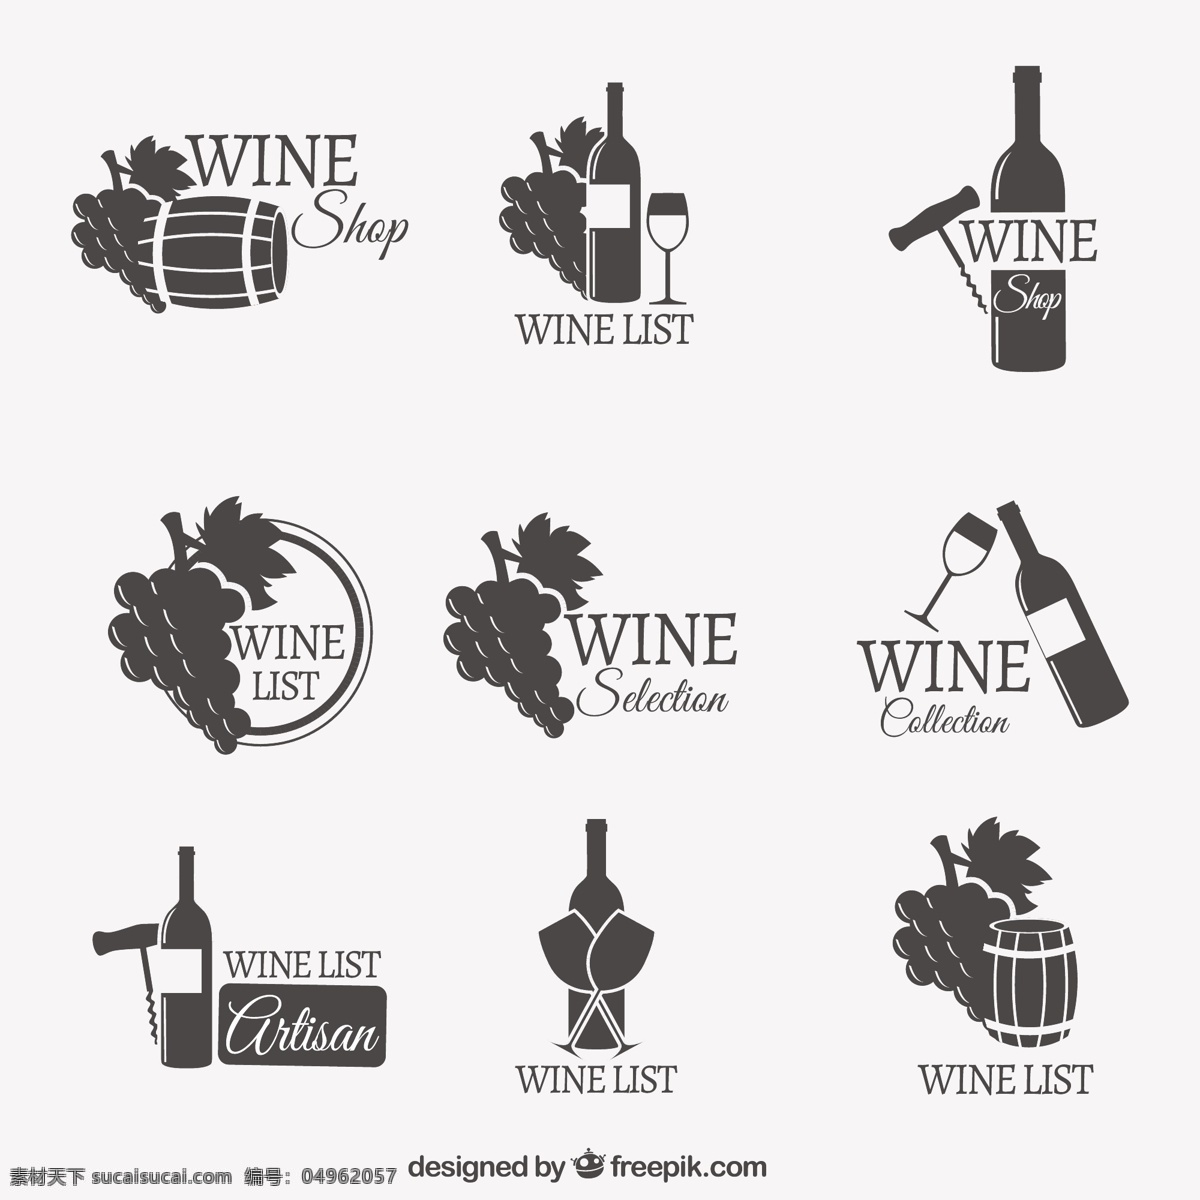 葡萄酒的标志 标志 标签 徽章 酒 瓶 玻璃 饮料 列表 会徽 葡萄 酒杯 酒瓶 桶 葡萄酒标签 酒精饮料 白色